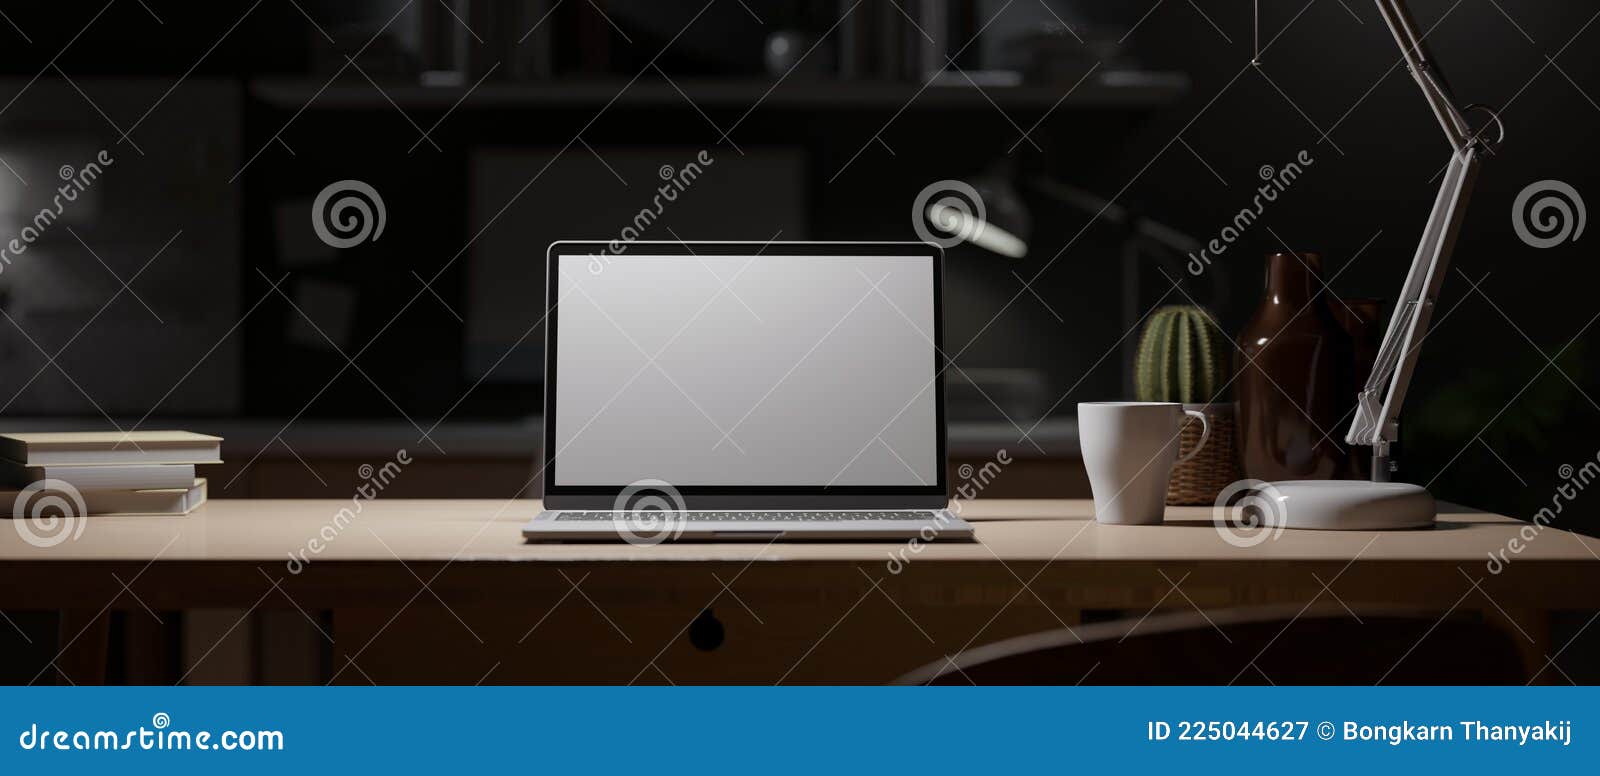 Immagini Stock - PC Nero Con Grande Monitor Bianco Vuoto E Laptop Vuoto  Sotto La Luce Della Lampada. Rendering 3D. Copia Spazio. Spazio Vuoto..  Image 142981452